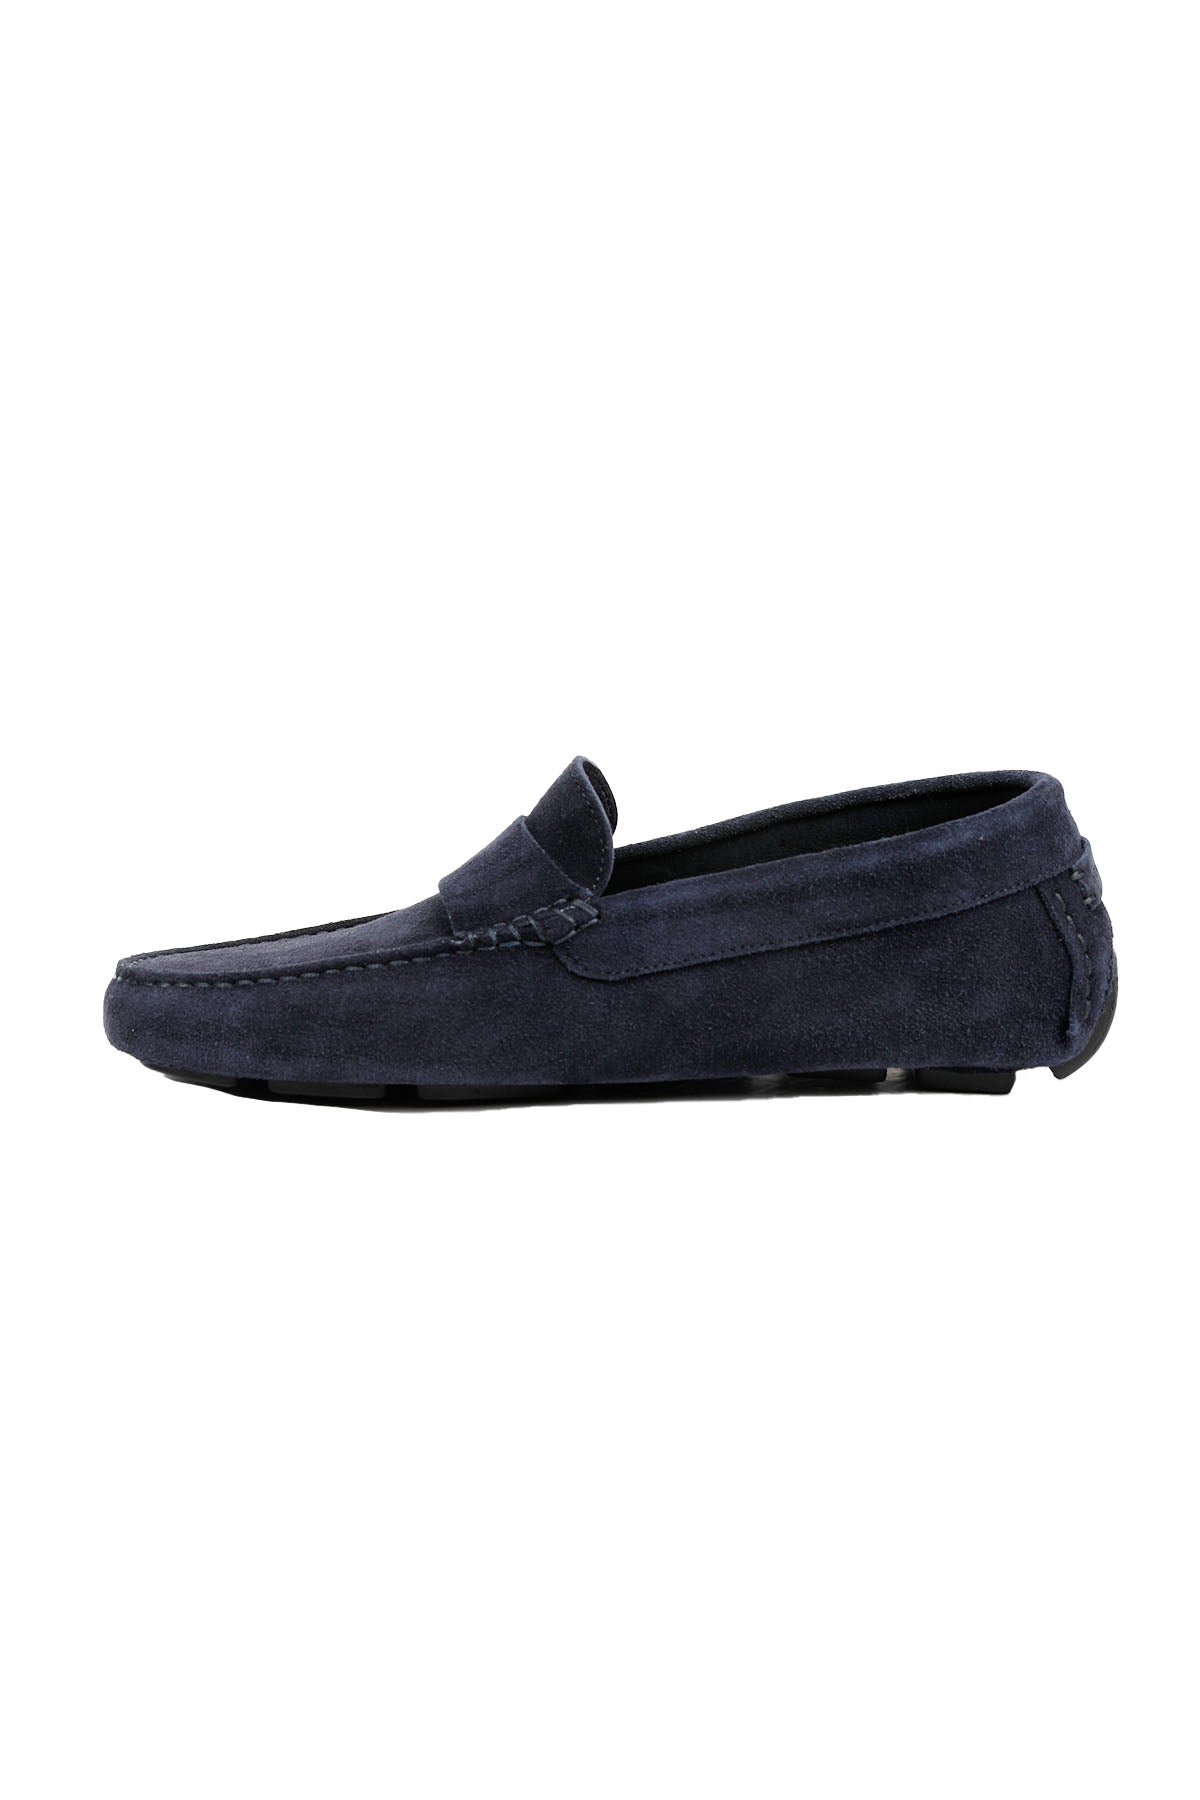 Henderson Monaco Loafer Ayakkabı-Libas Trendy Fashion Store